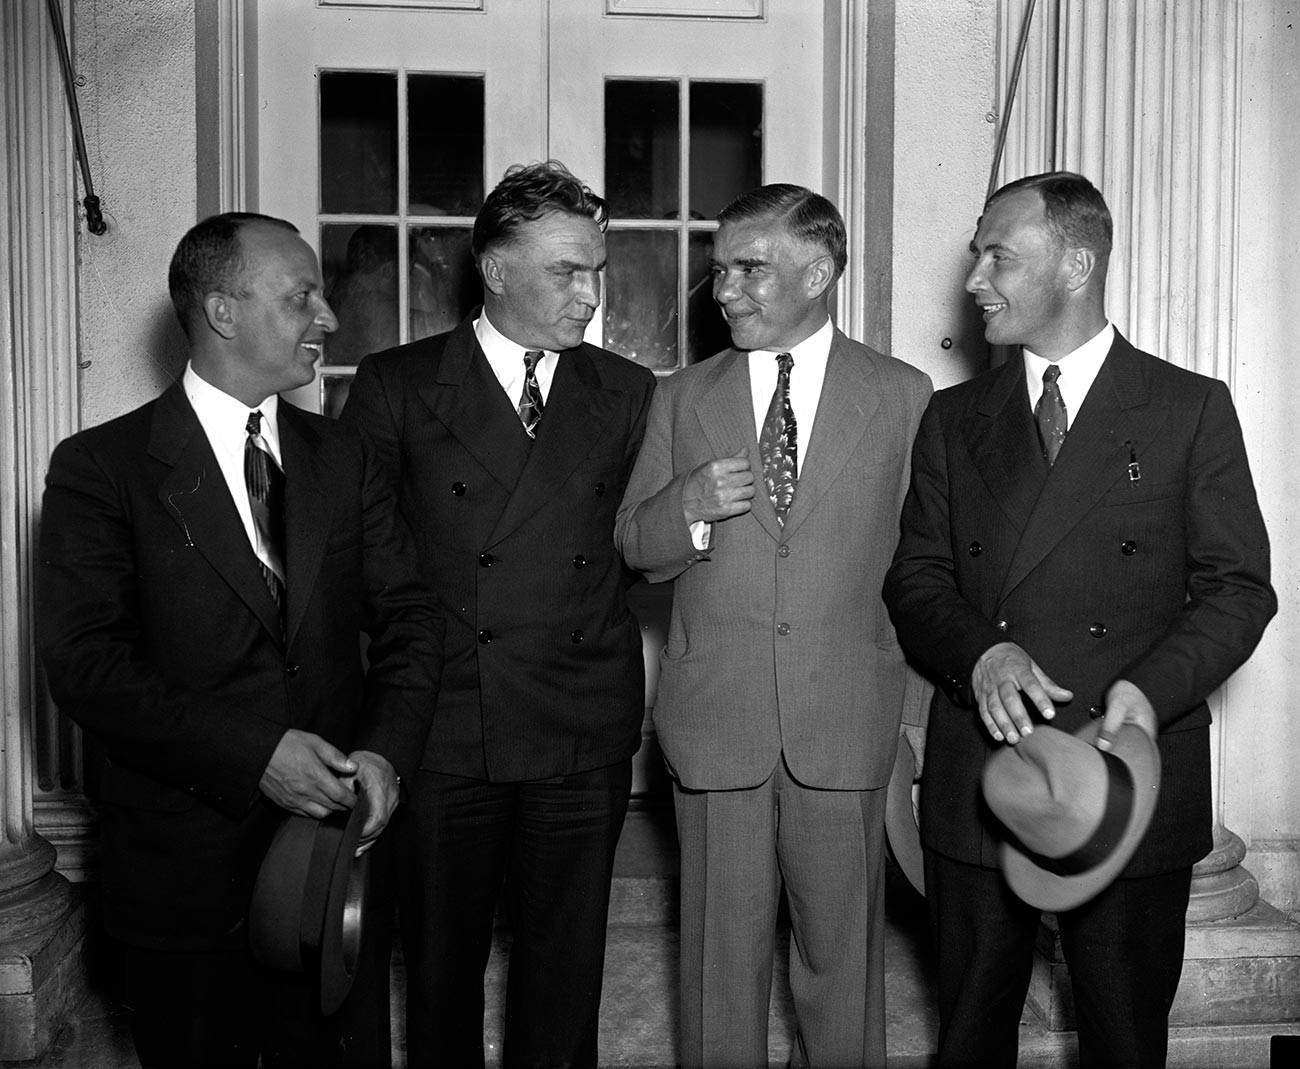 Bajdukov, Čkalov, opunomoćeni predstavnik SSSR-a Trojanovski i Beljakov poslije prijema kod predsjednika SAD-a Roosevelta u Bijeloj kući 28. lipnja 1937.

